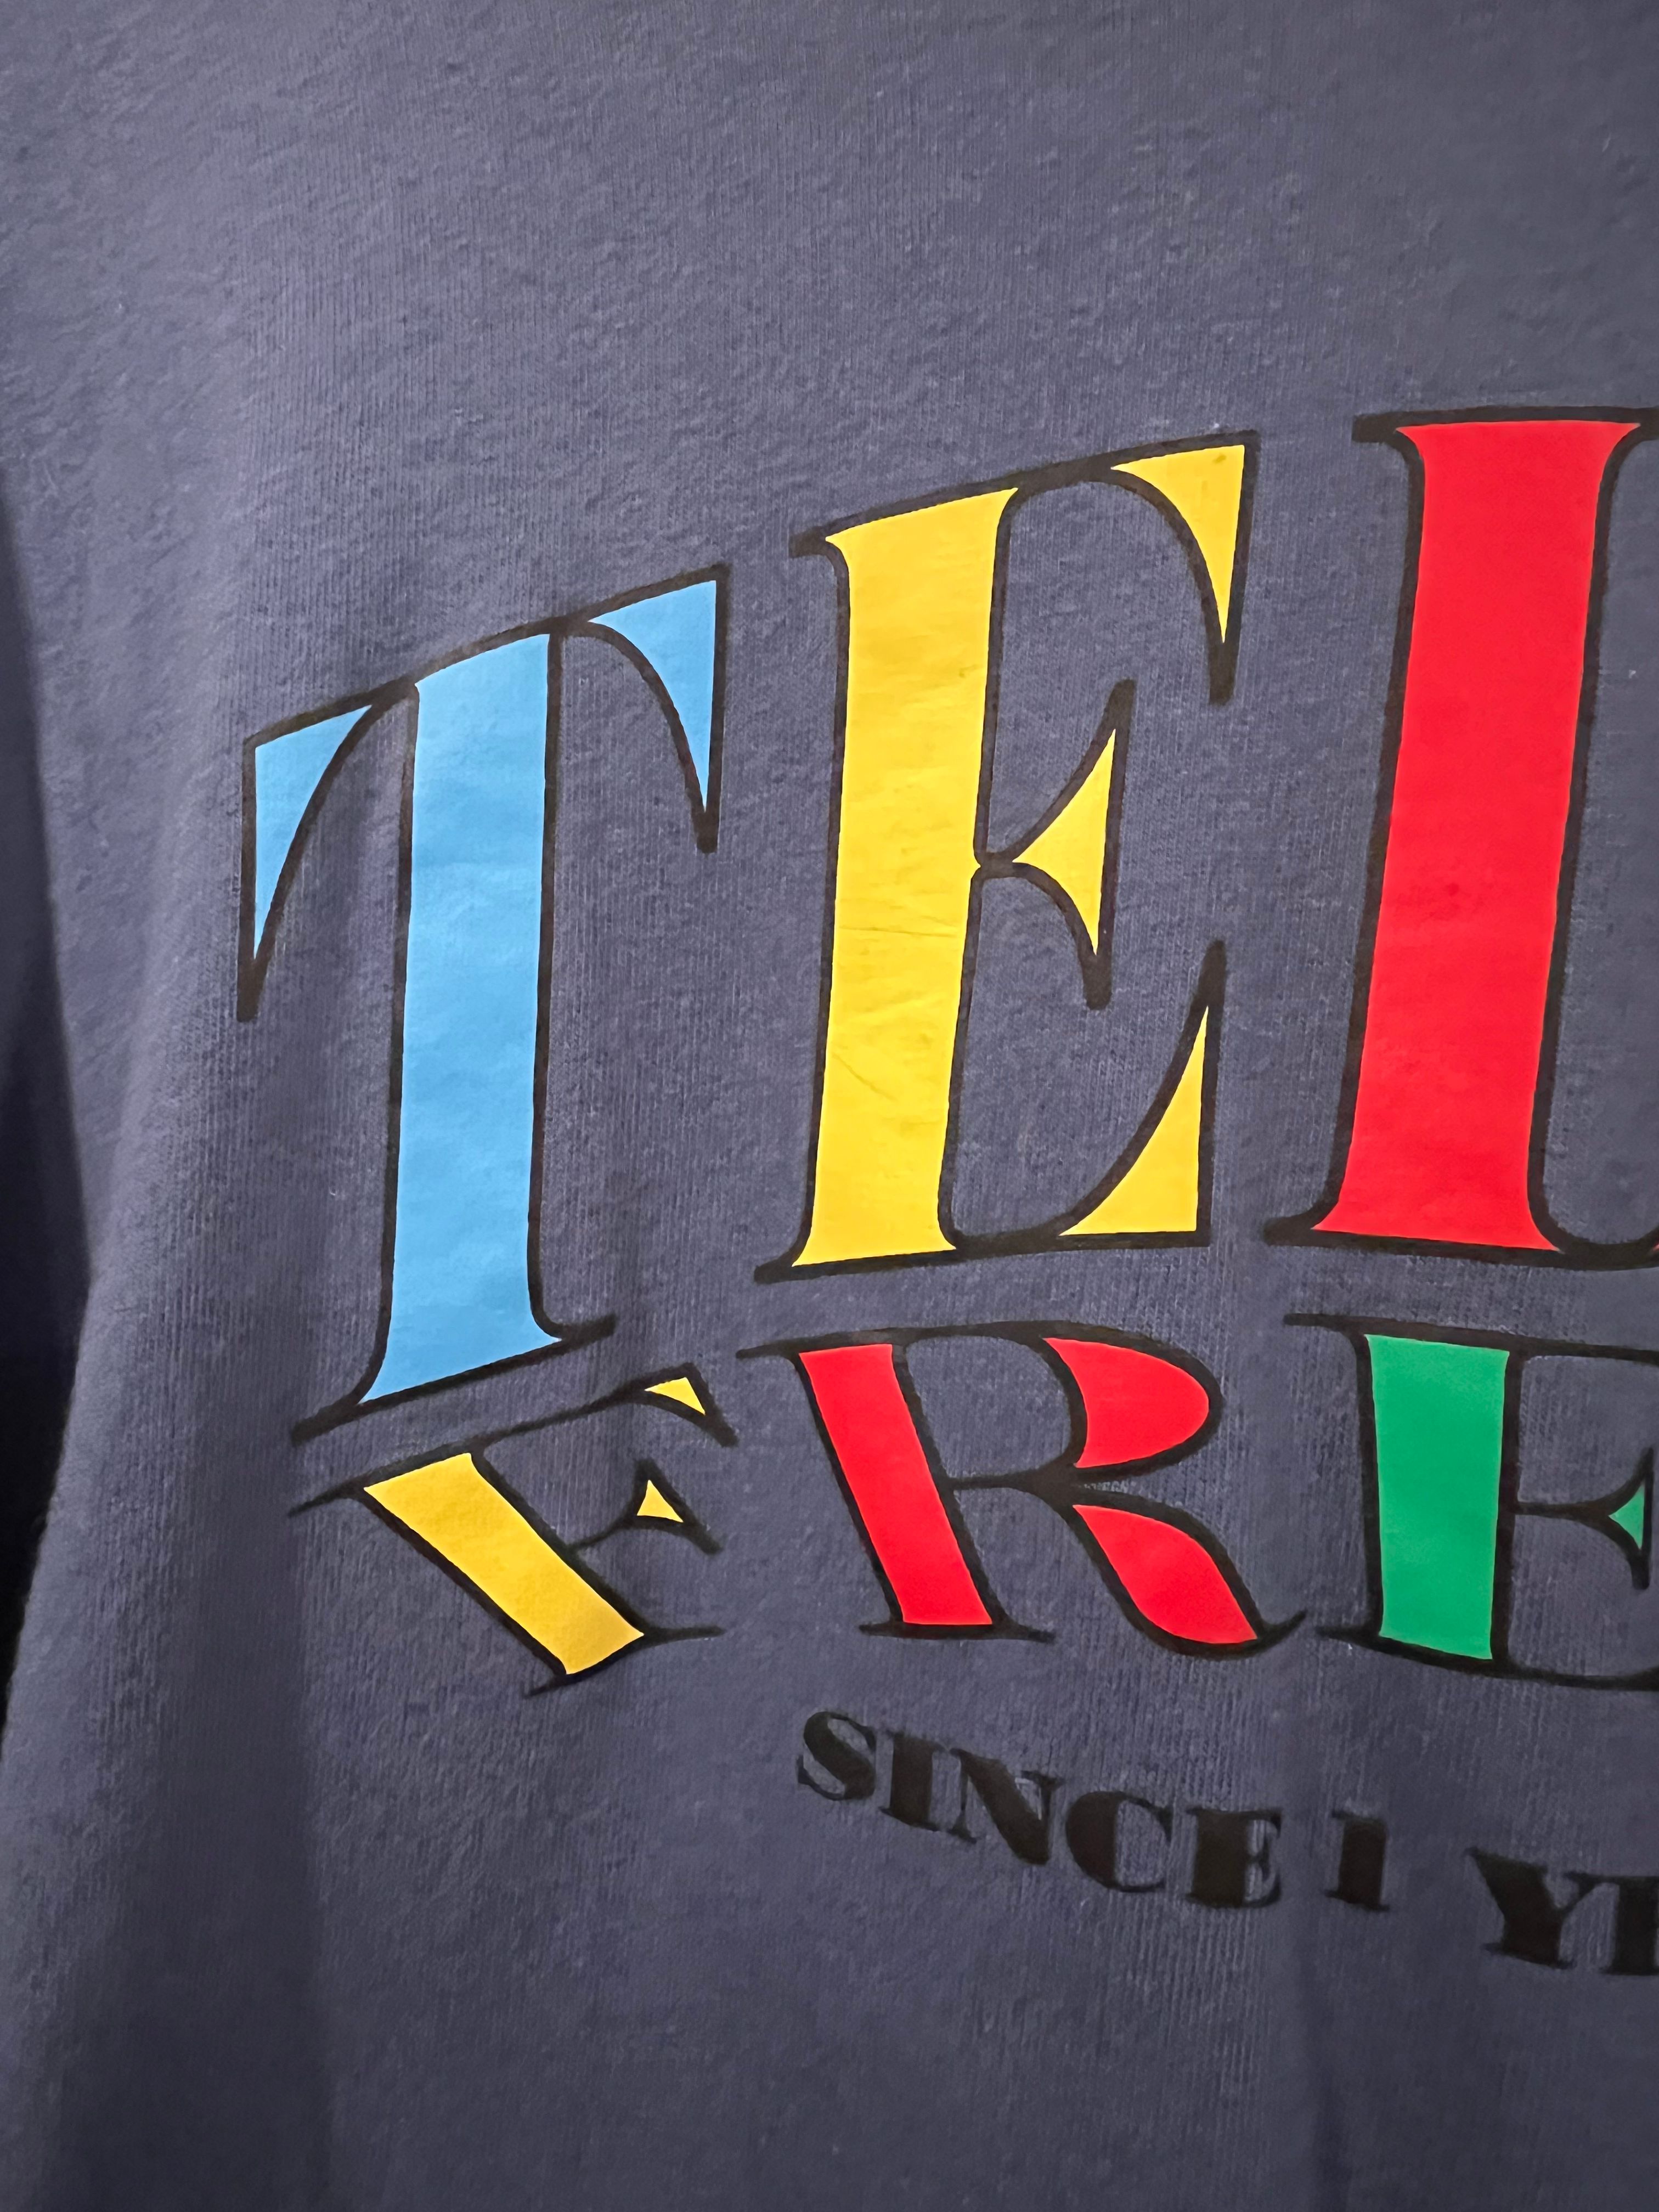 Teddy Fresh Teddy Fresh 1 Year Anniversary Shirt Size US XL / EU 56 / 4 - 2 Preview